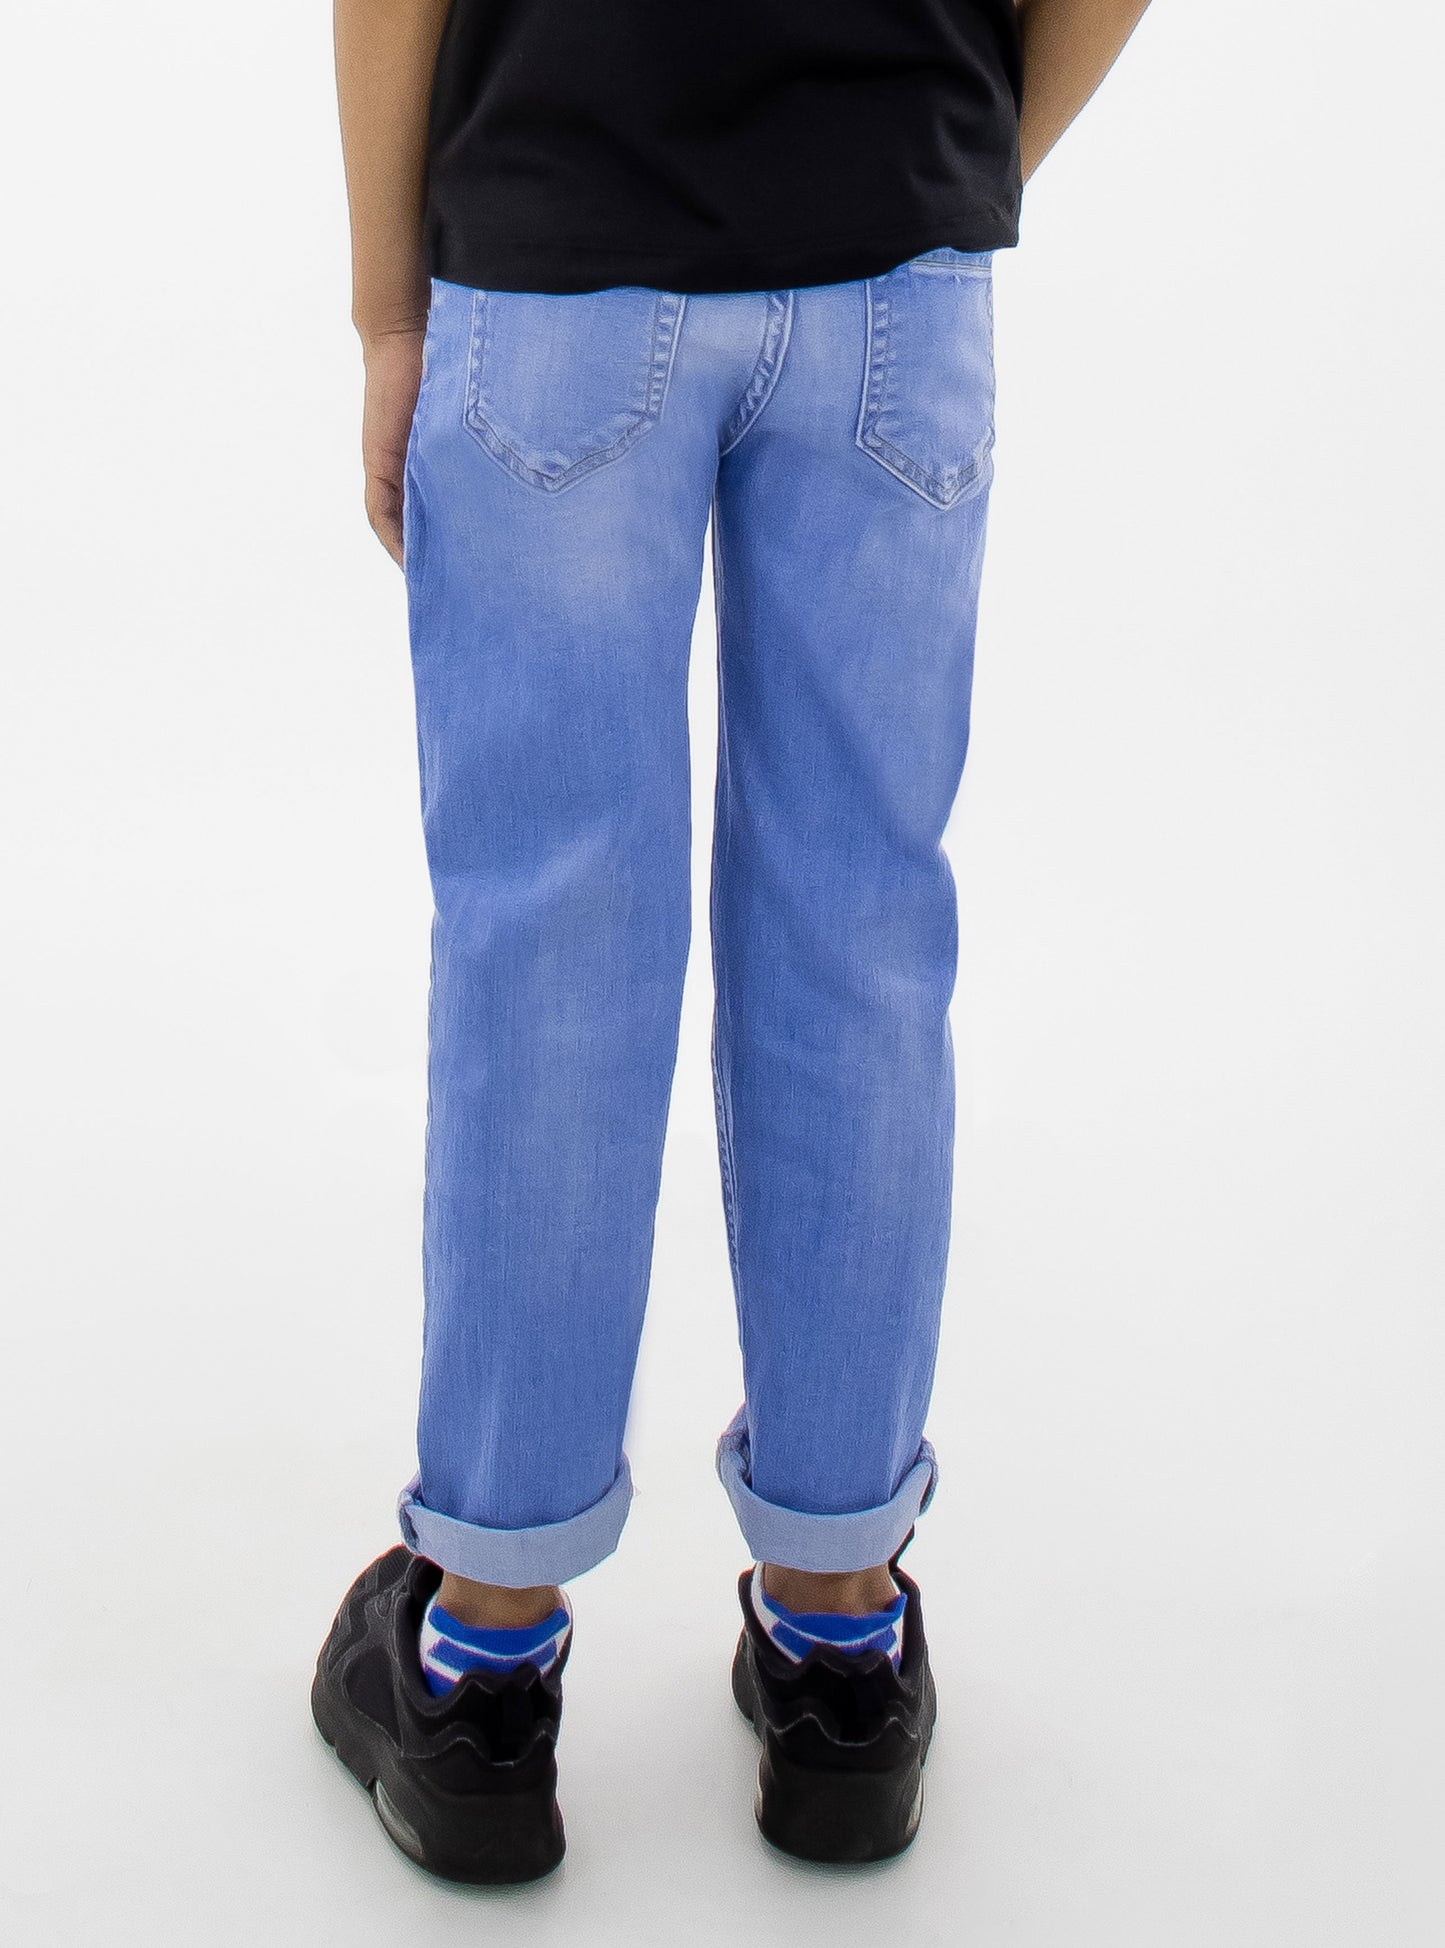 Jeans skinny con de color azul claro